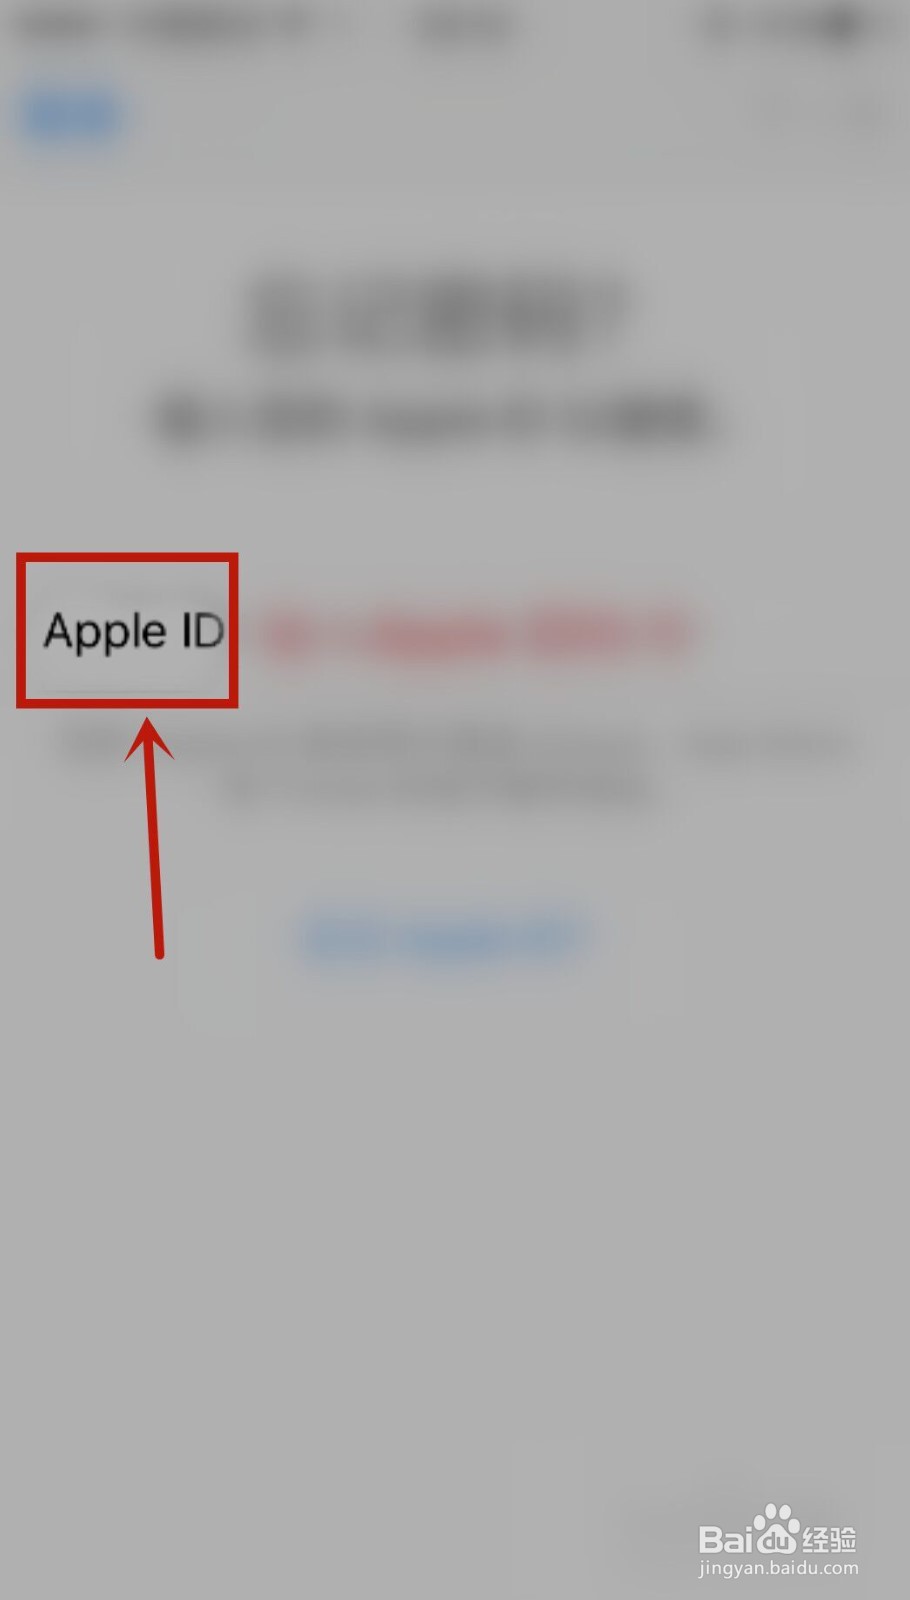 2、如何锁定Android手机ID锁：华为设备ID可以锁定手机